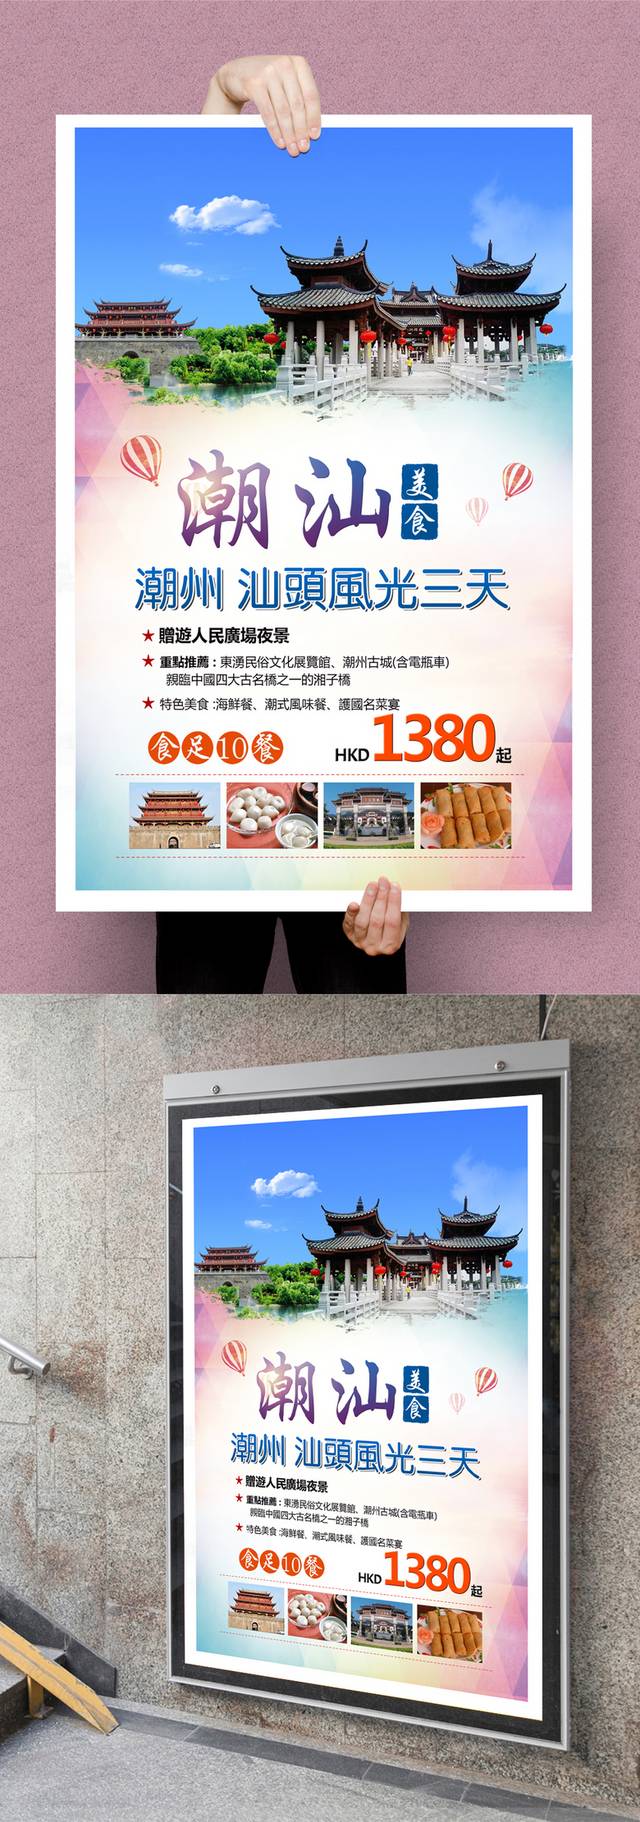 潮汕旅游海报设计